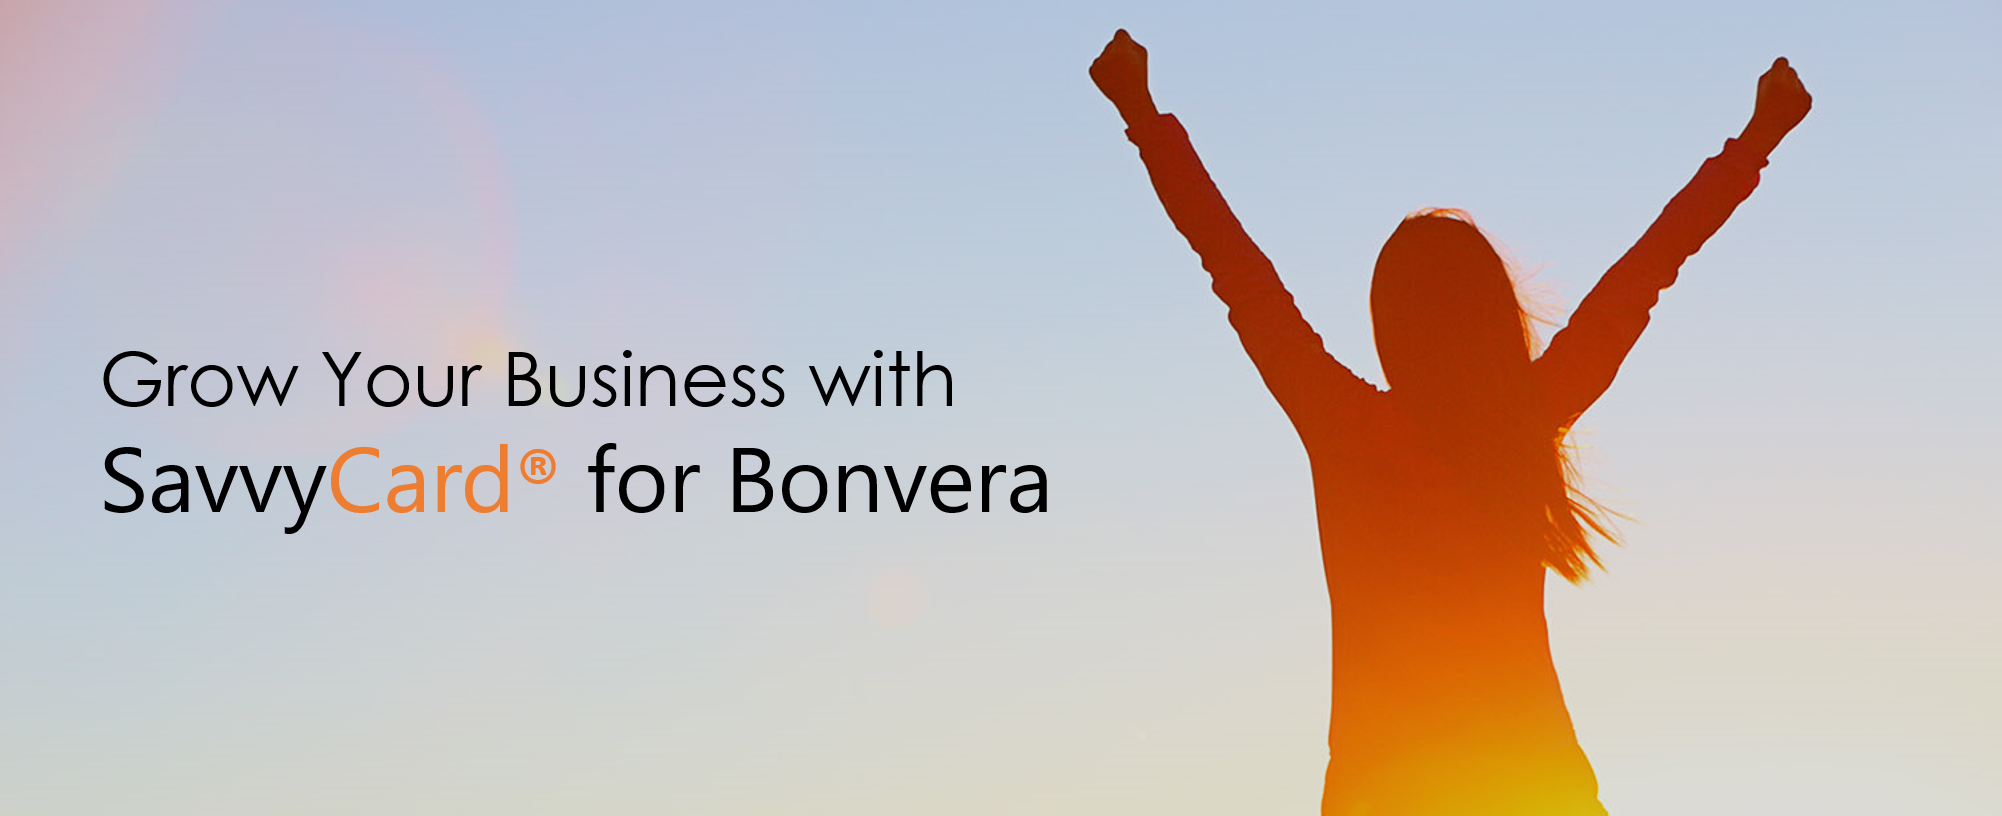 SC4Bonvera - Grow Your Business